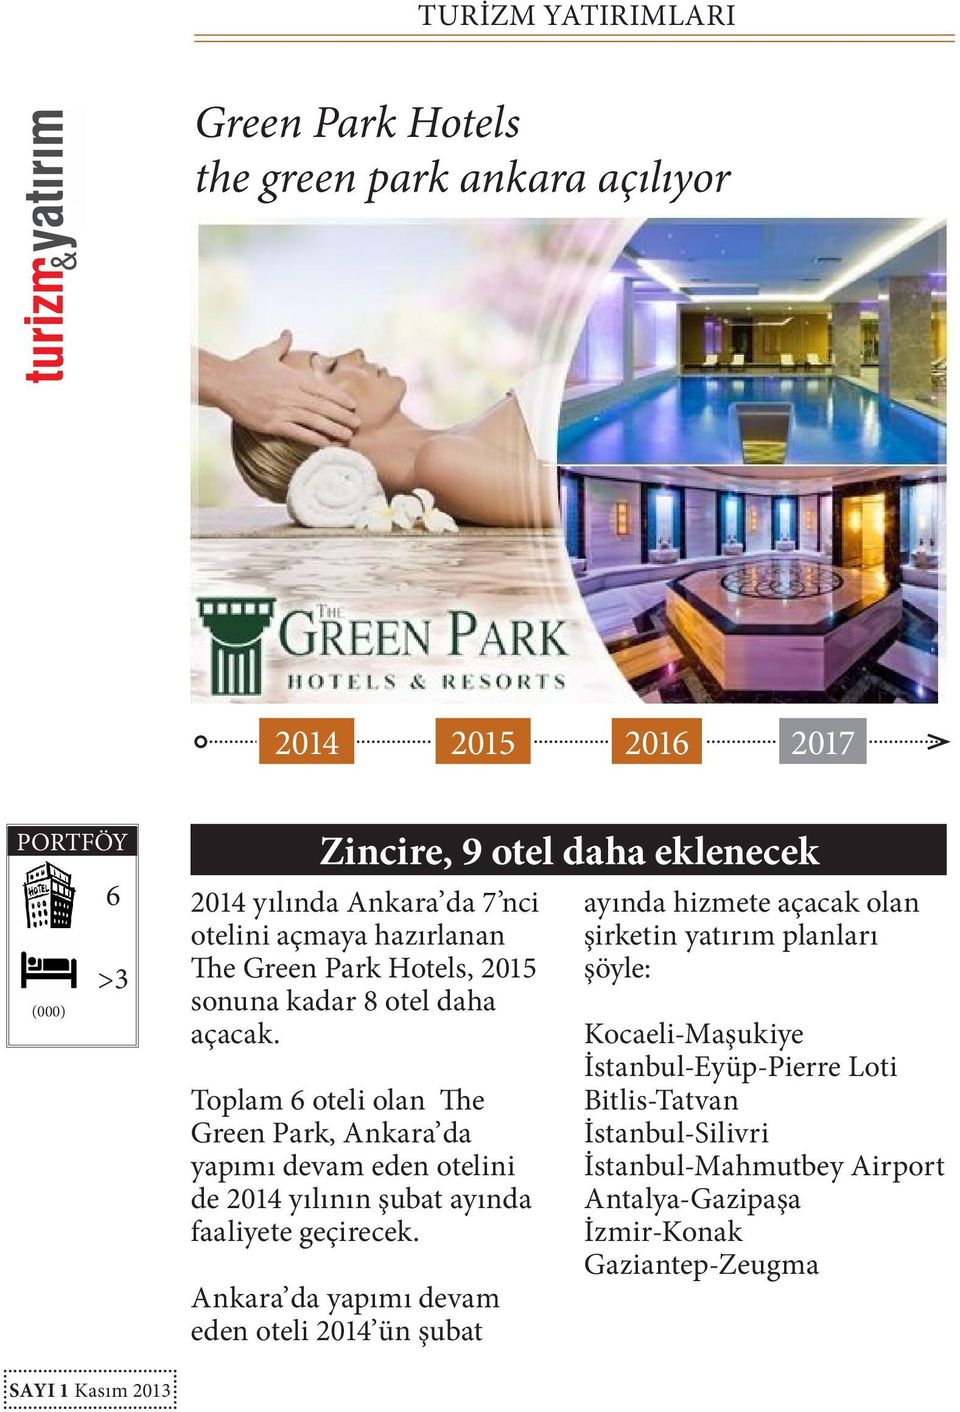 Toplam 6 oteli olan The Green Park, Ankara da yapımı devam eden otelini de yılının şubat ayında faaliyete geçirecek.